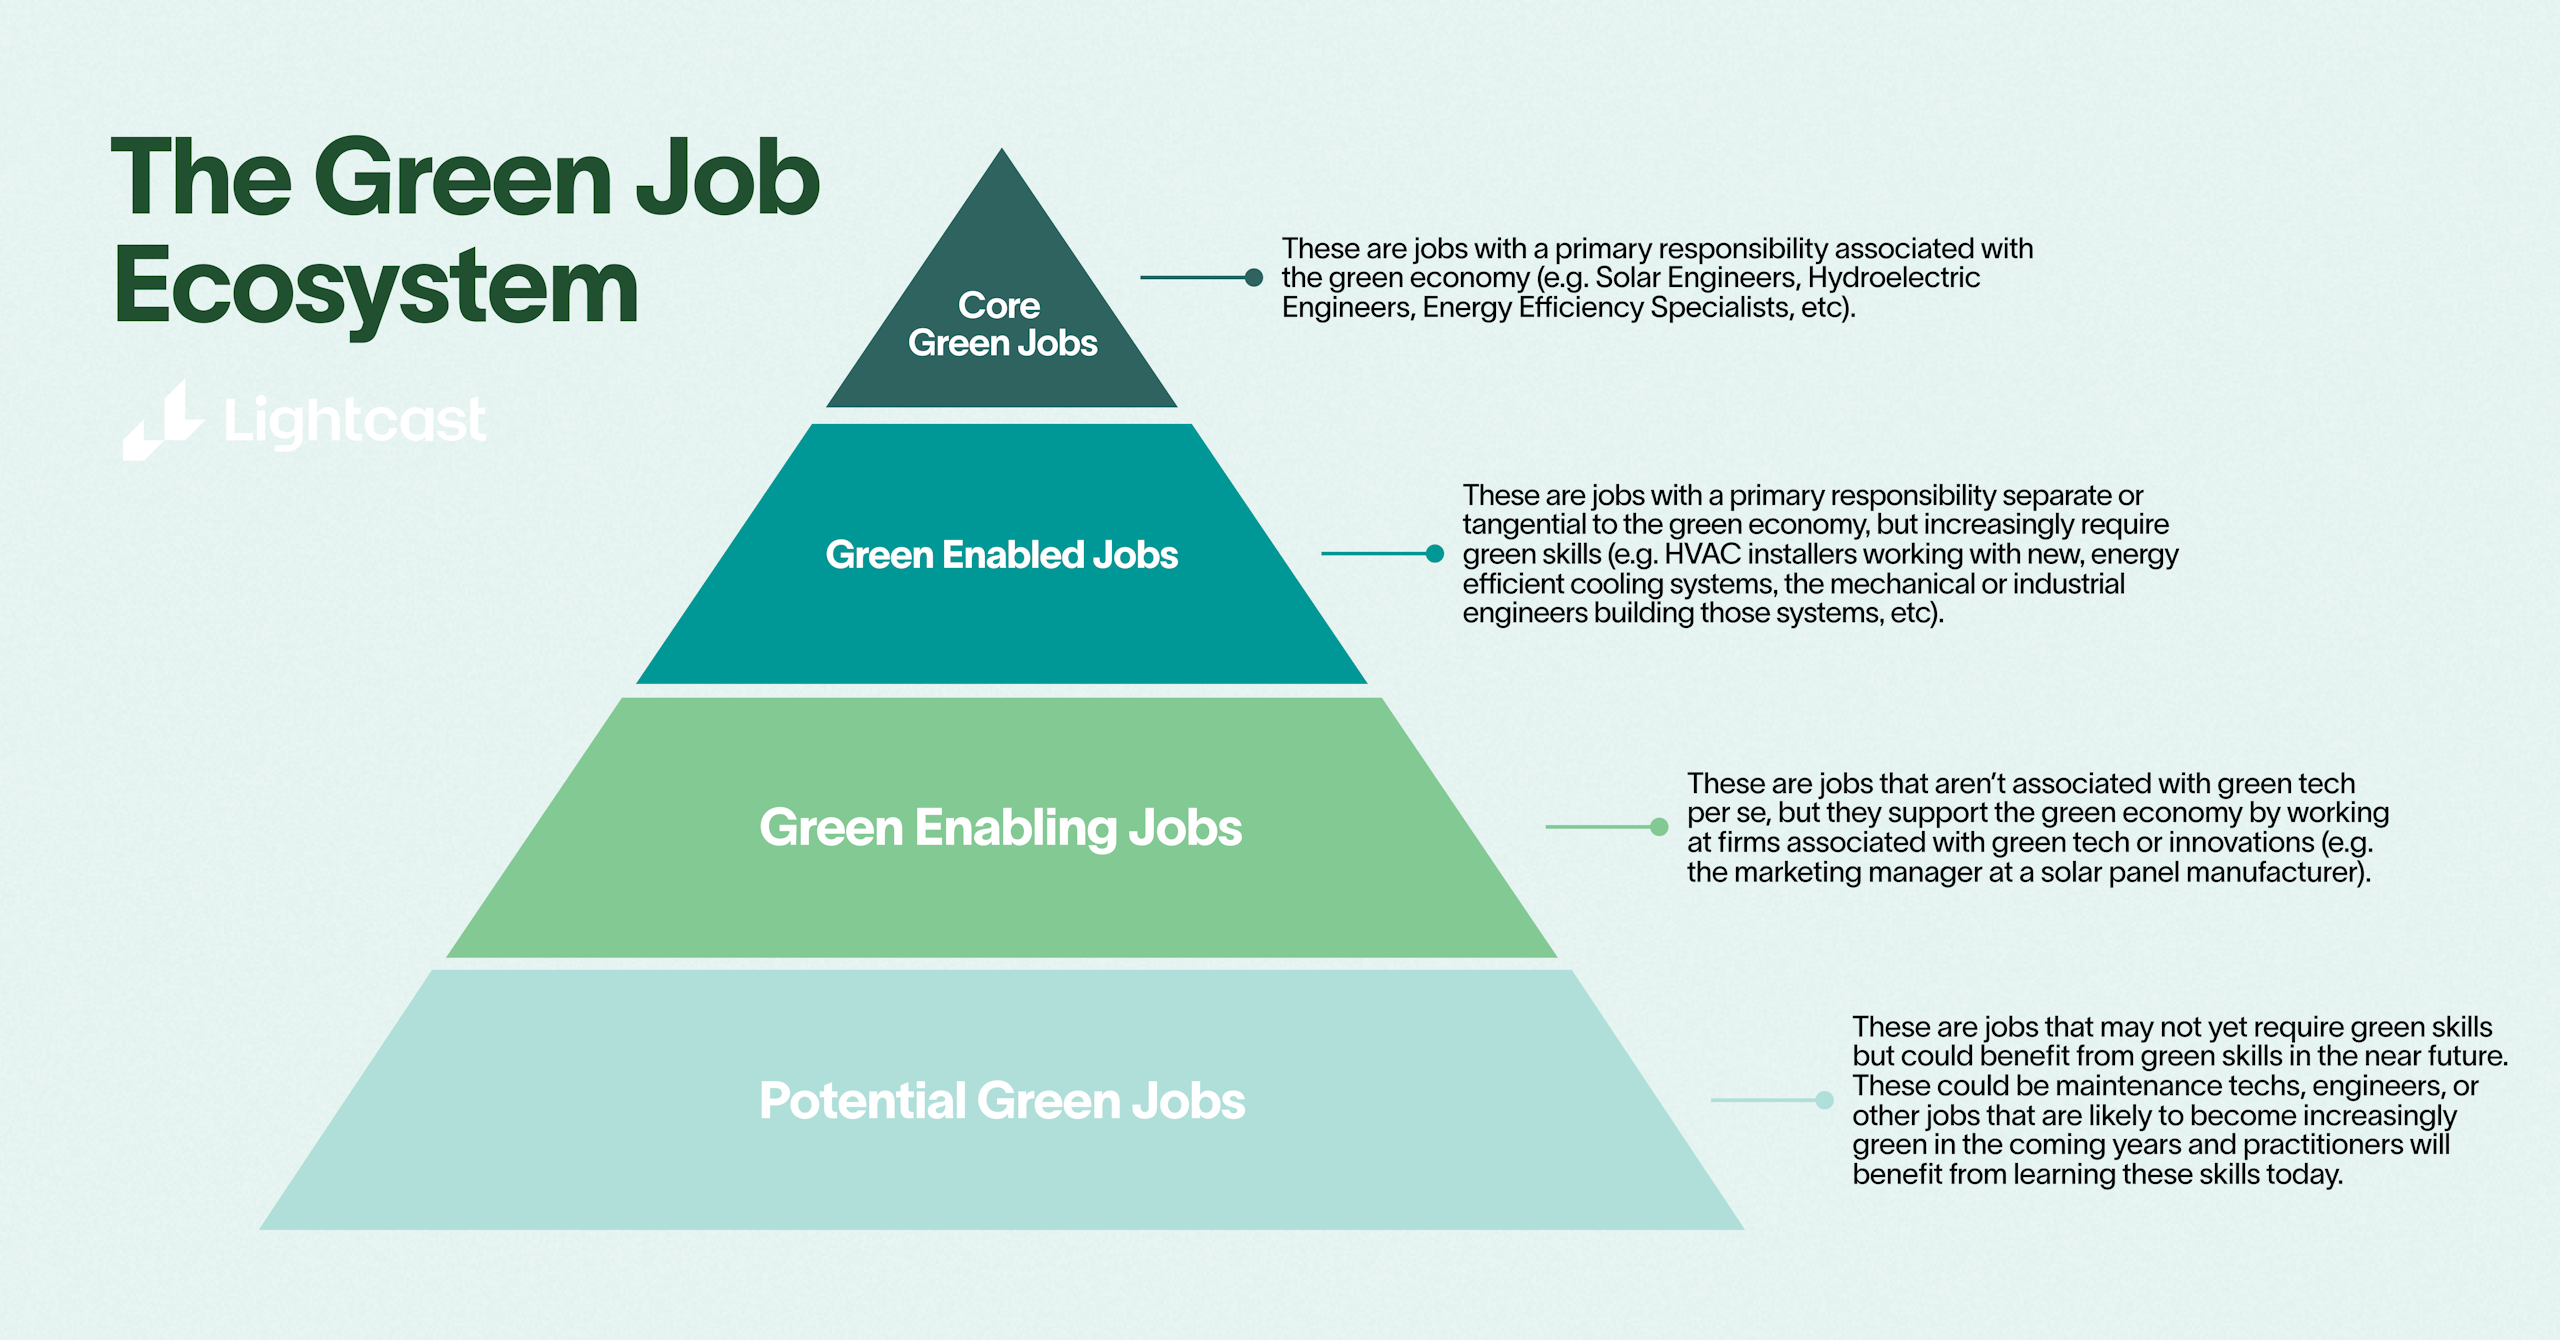 green jobs ecosystem pyramid lightcast branded